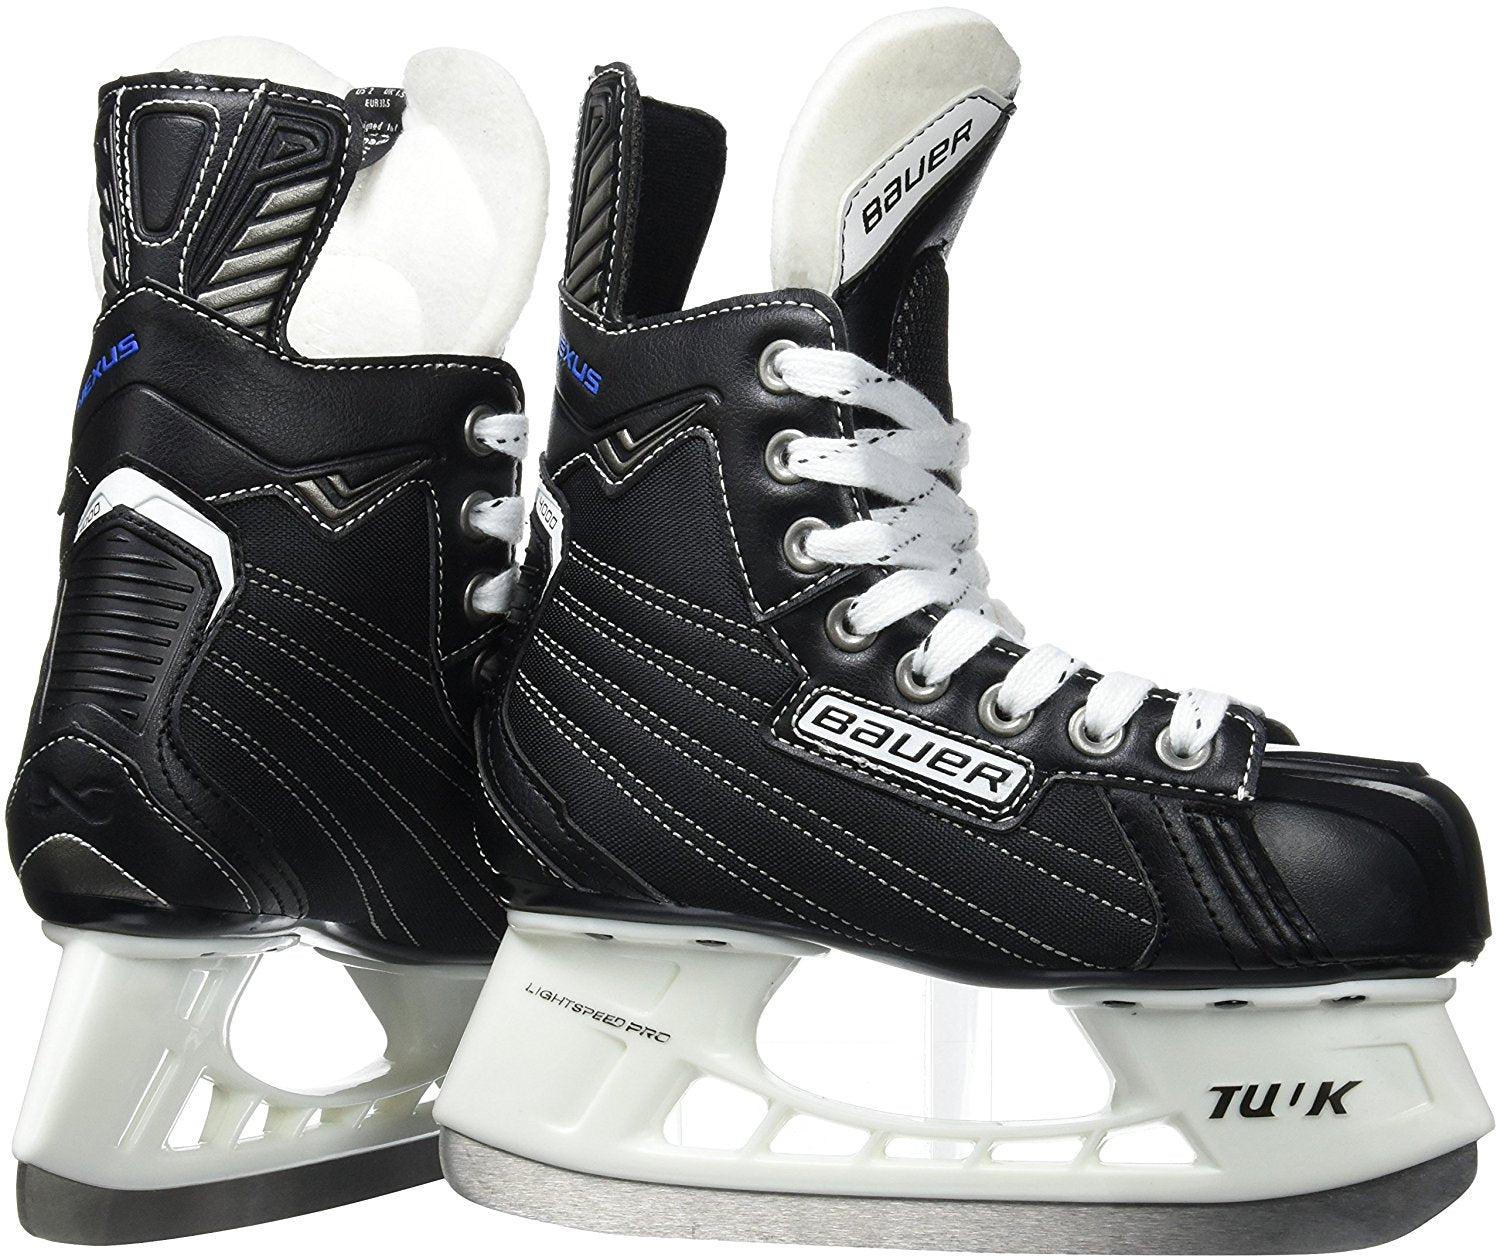 Bauer Nexus 4000 Junior Ice Hockey Skates, Width R, Size 3